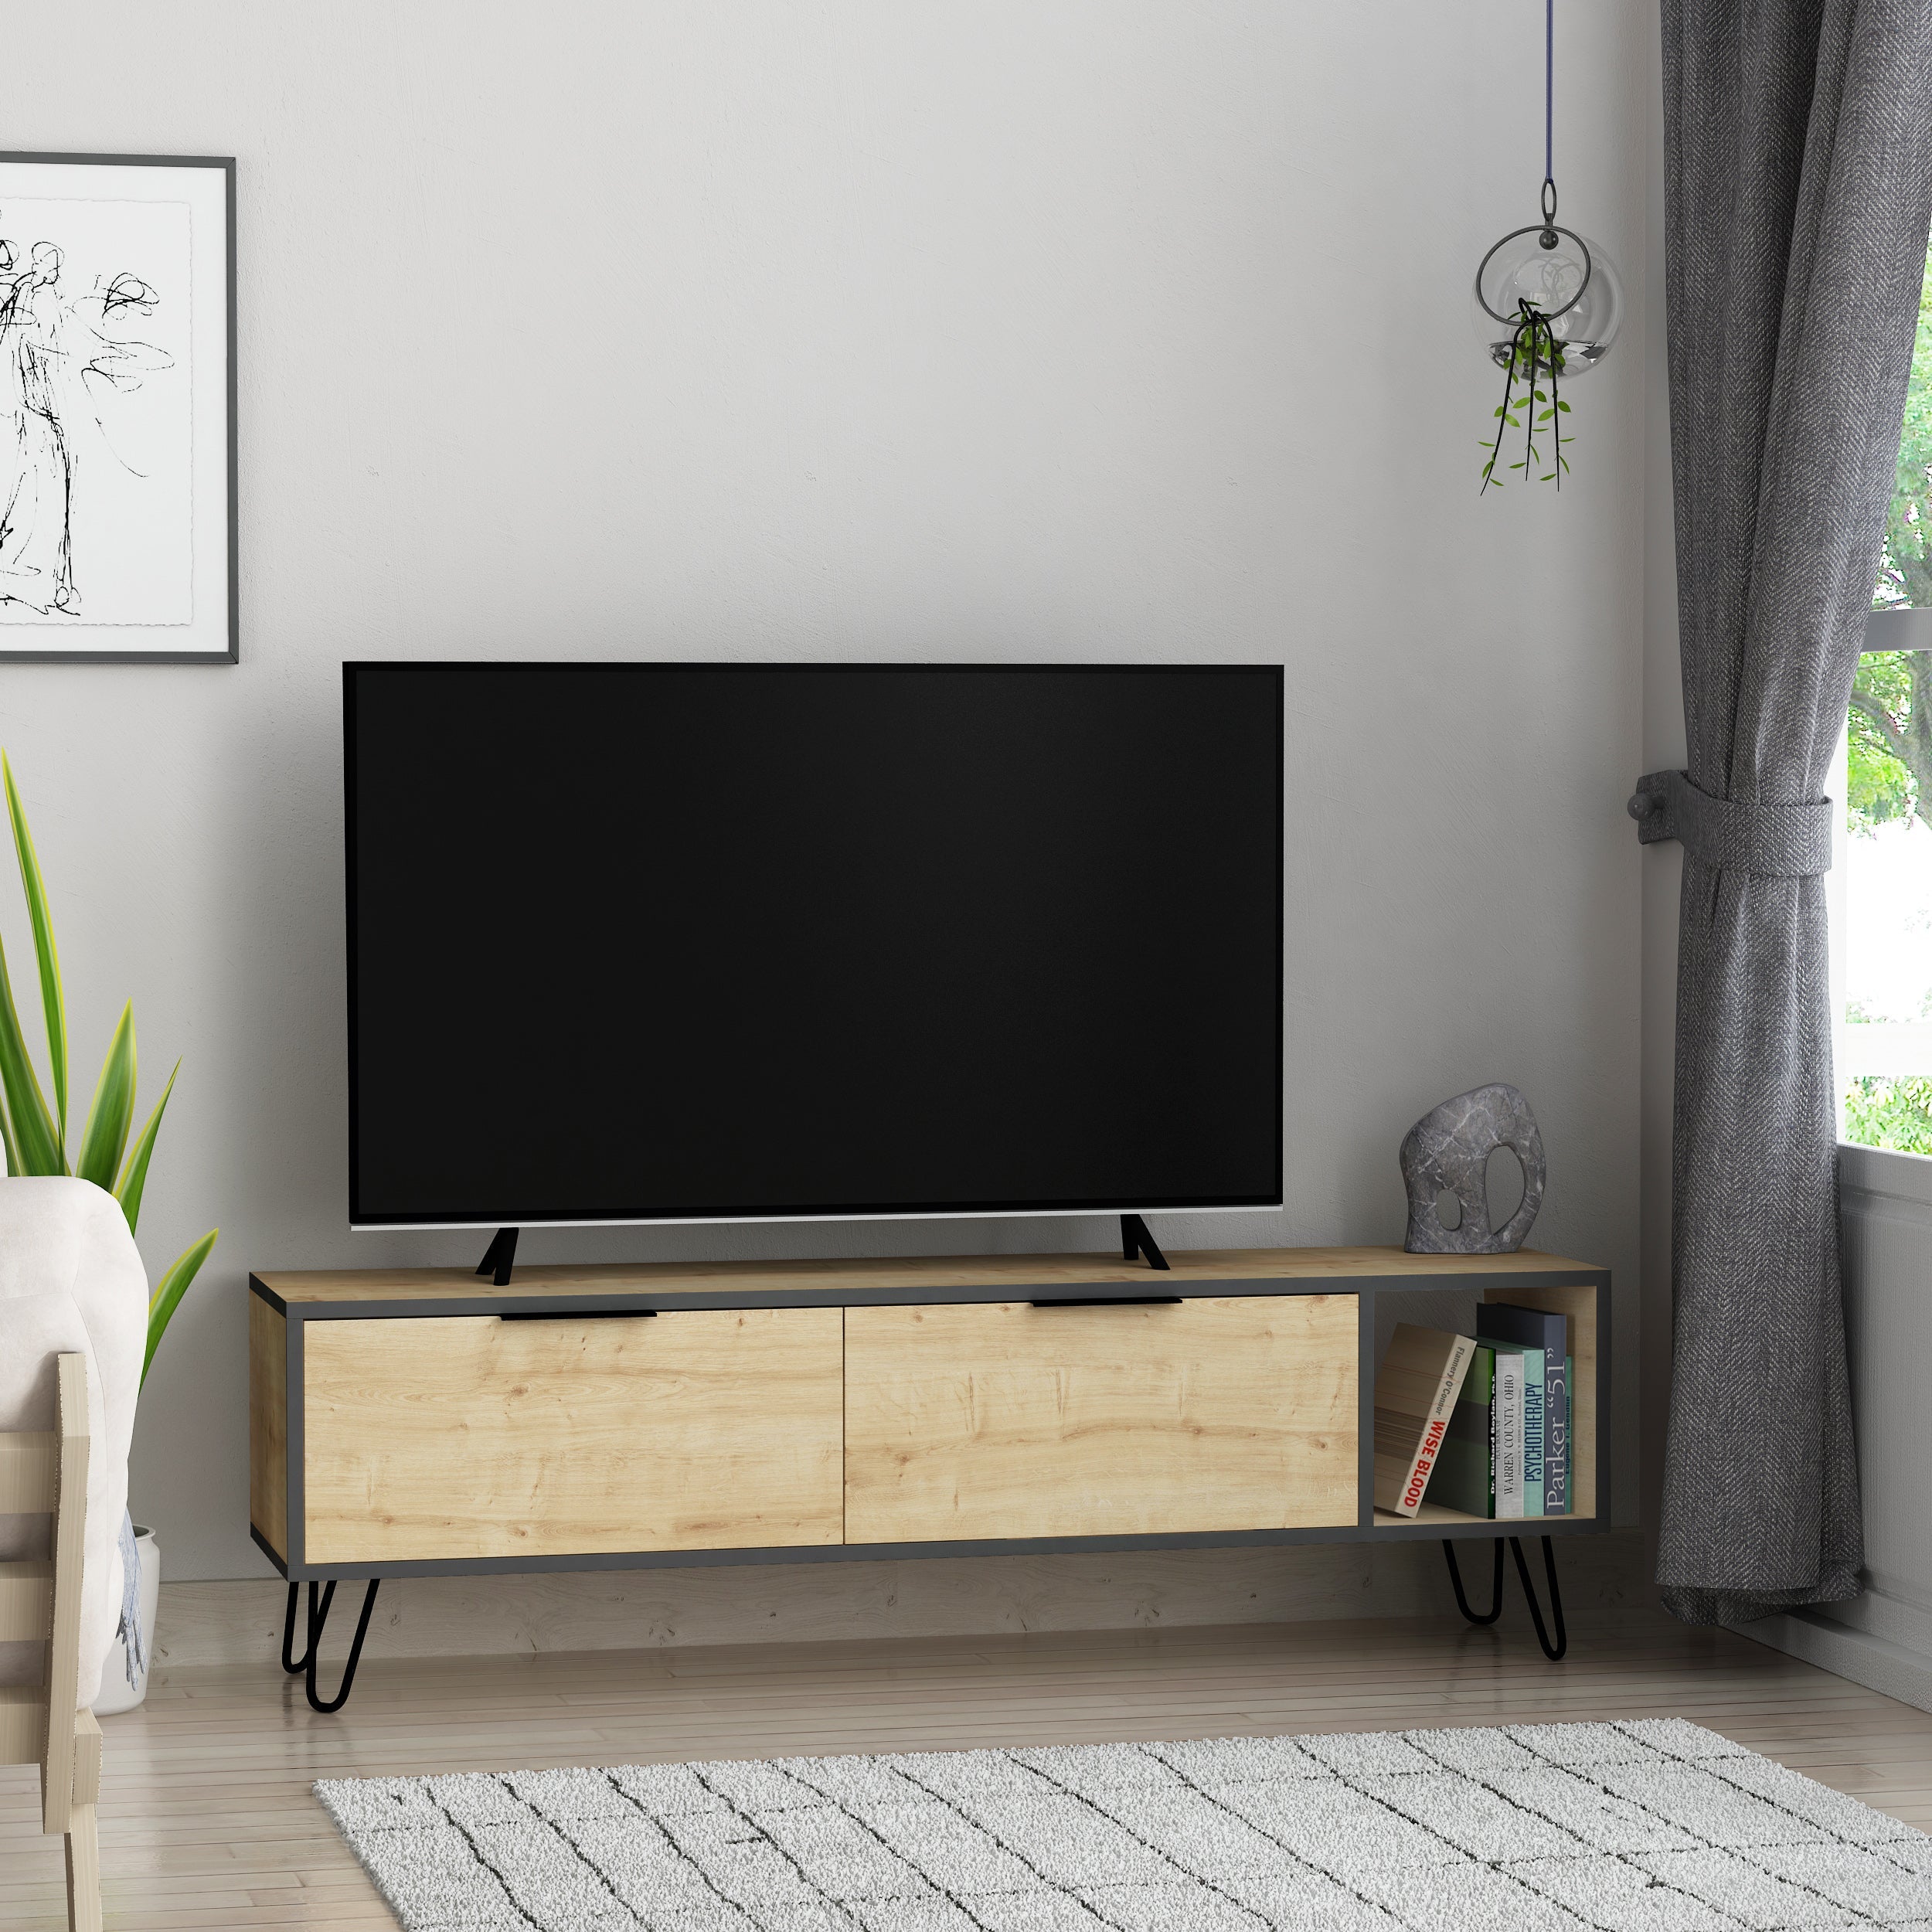 Furoki Modern Tv Unit With Storage Cabinet 150cm - Decortie